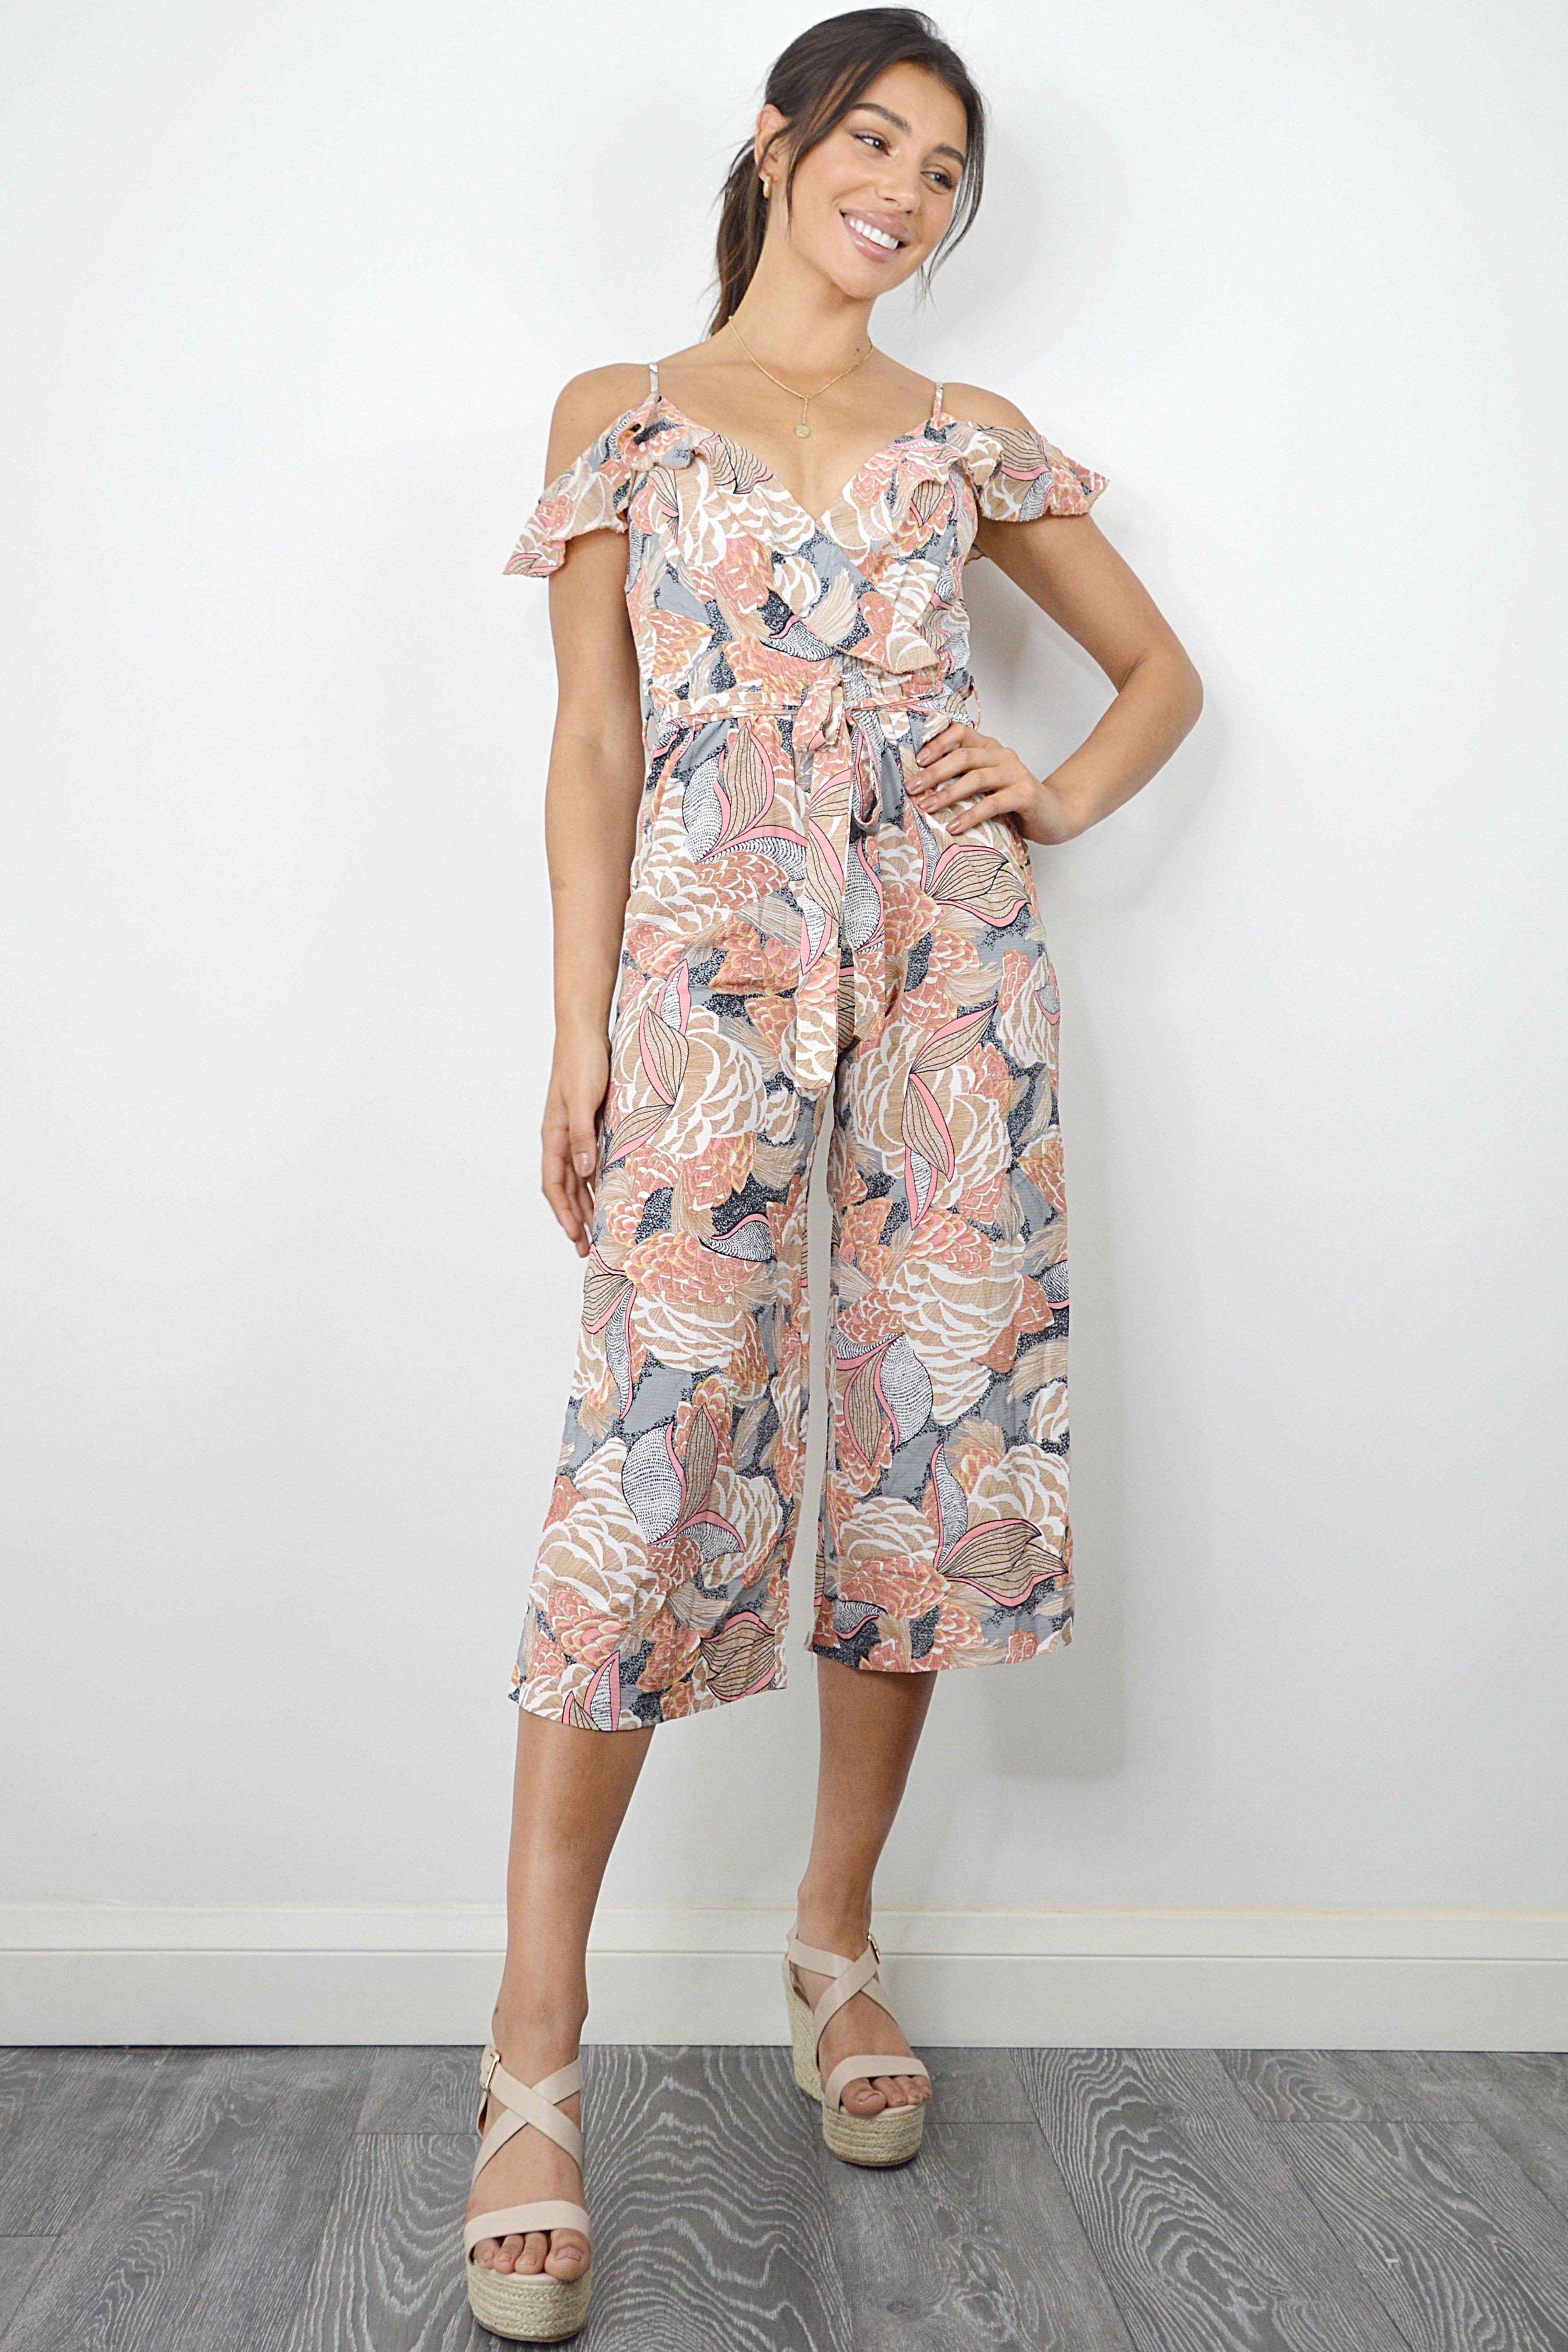 - Culotte jumpsuit  - Floral print  - Cold shoulder  - Length 122 cm  - Model Height: 5ft 9/175cm  - Model wears UK 8/EUR 36/US 4